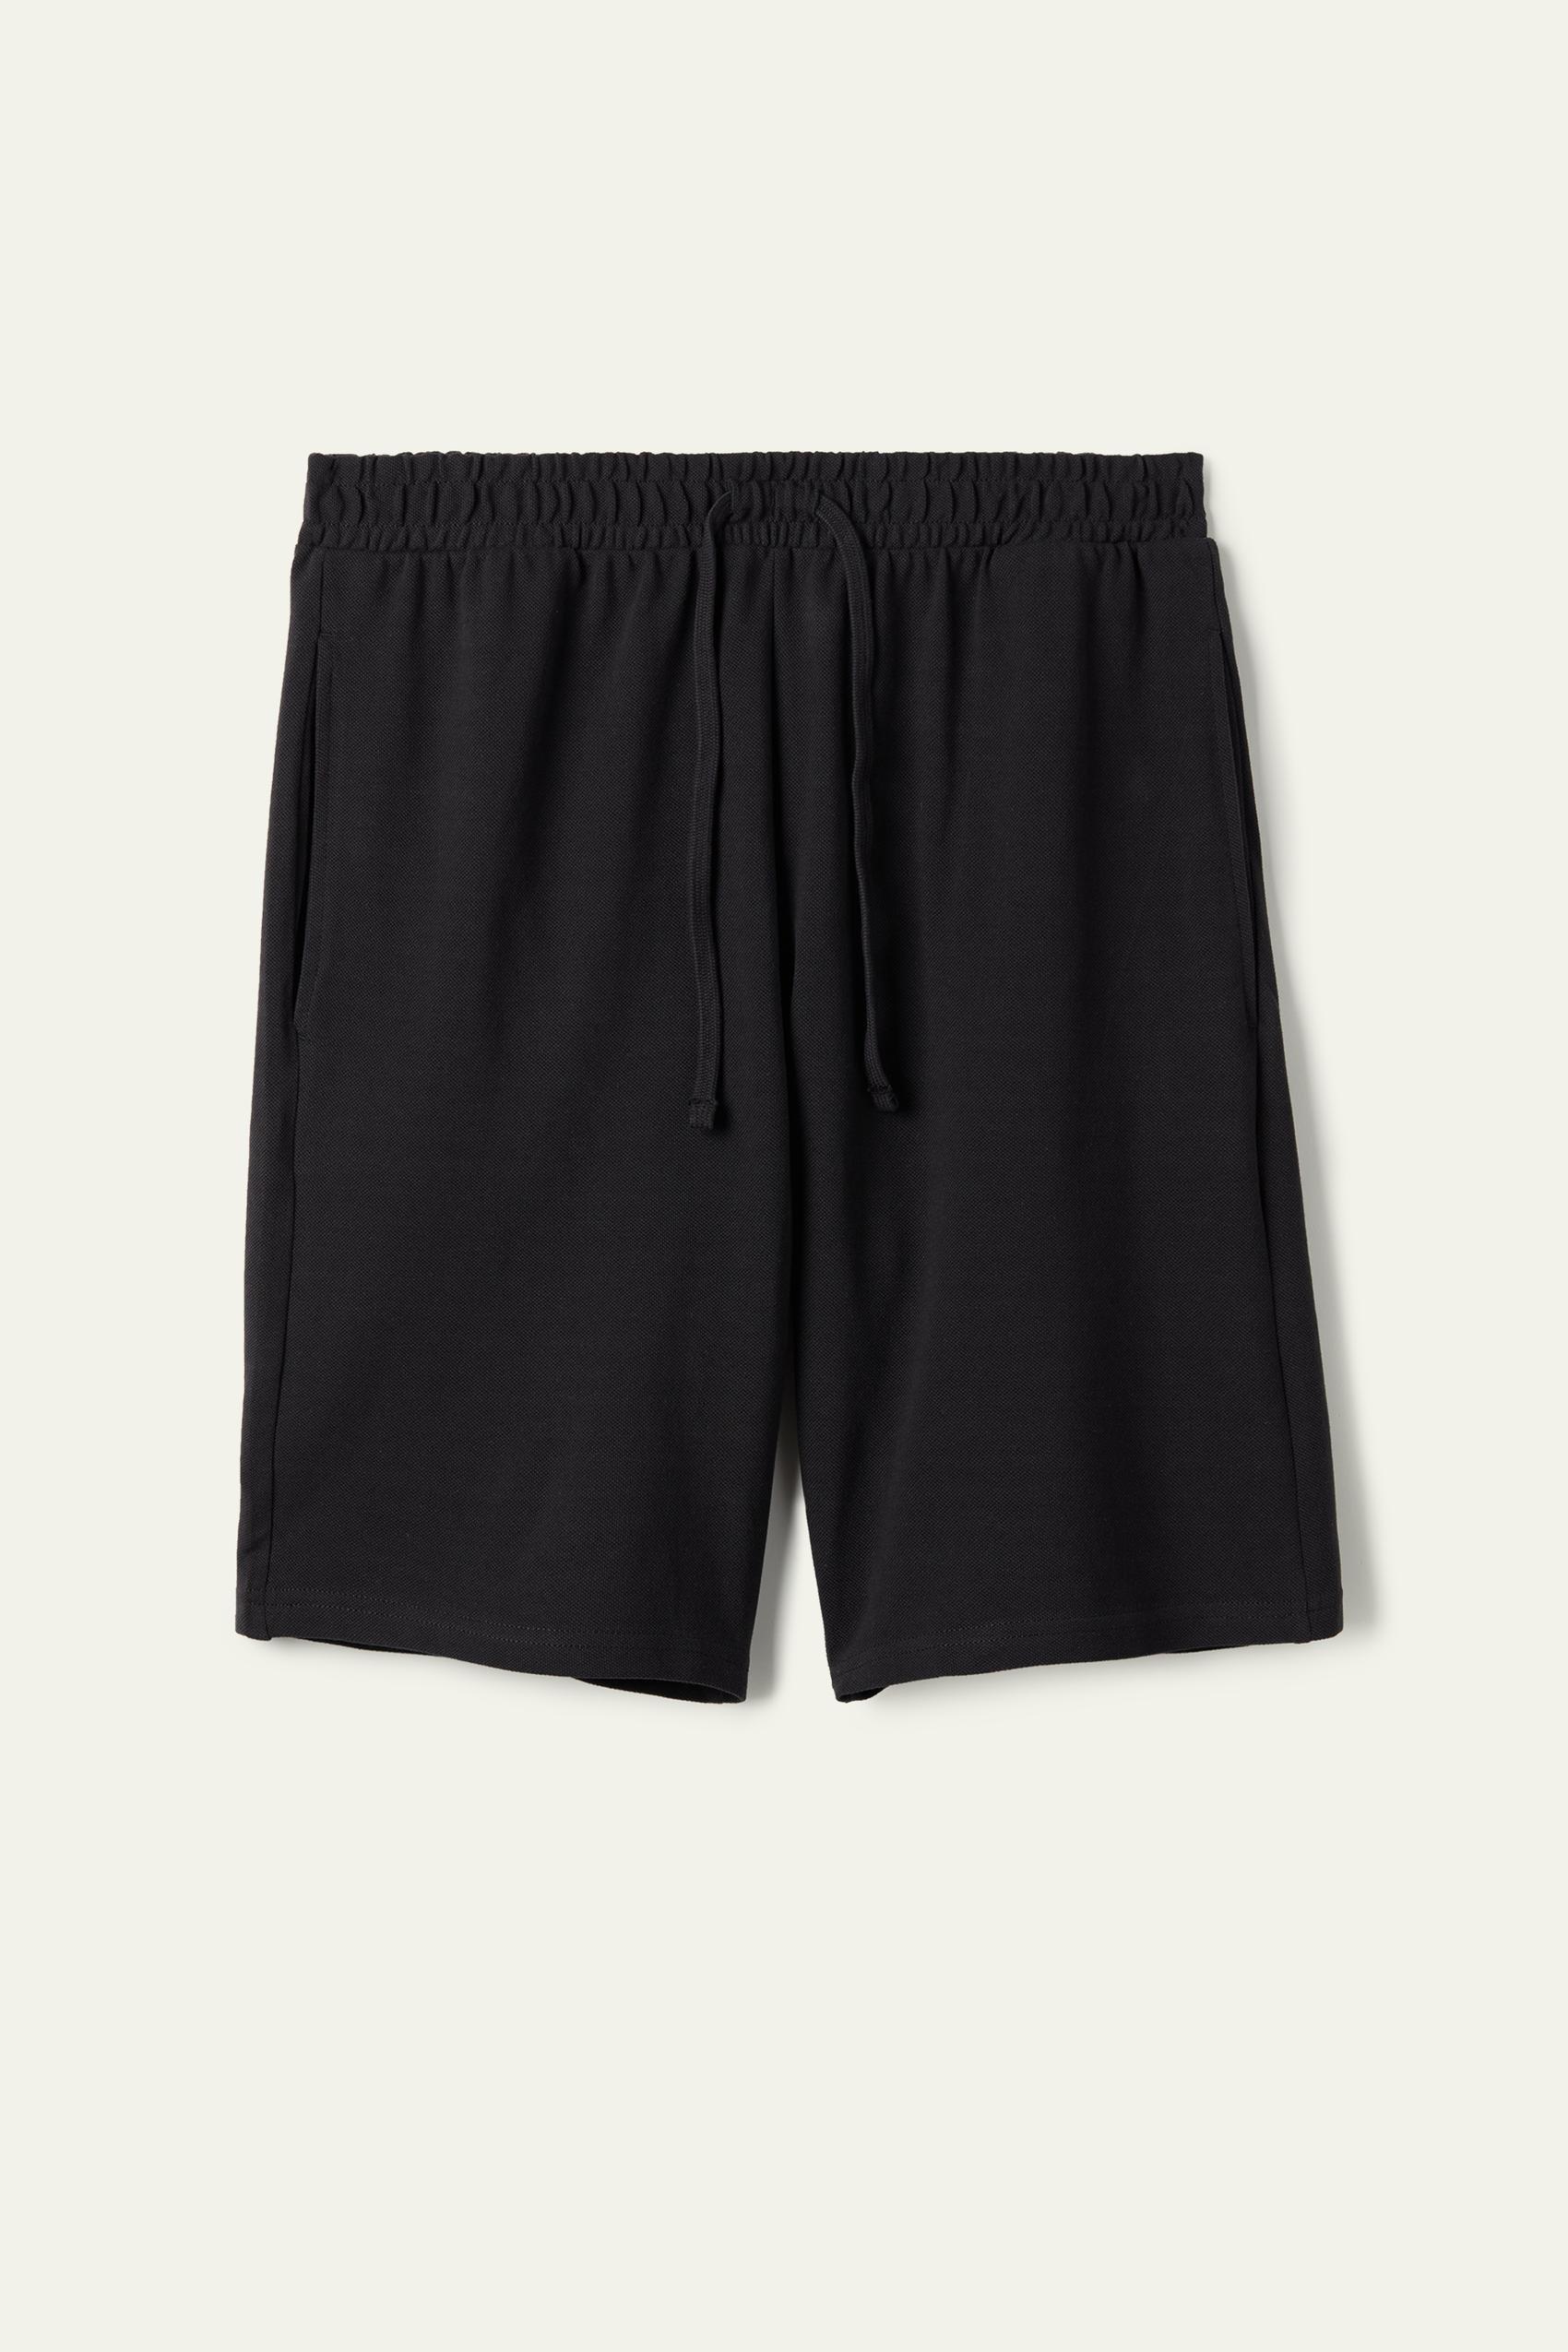 Tezenis - Black Cotton Pique Shorts